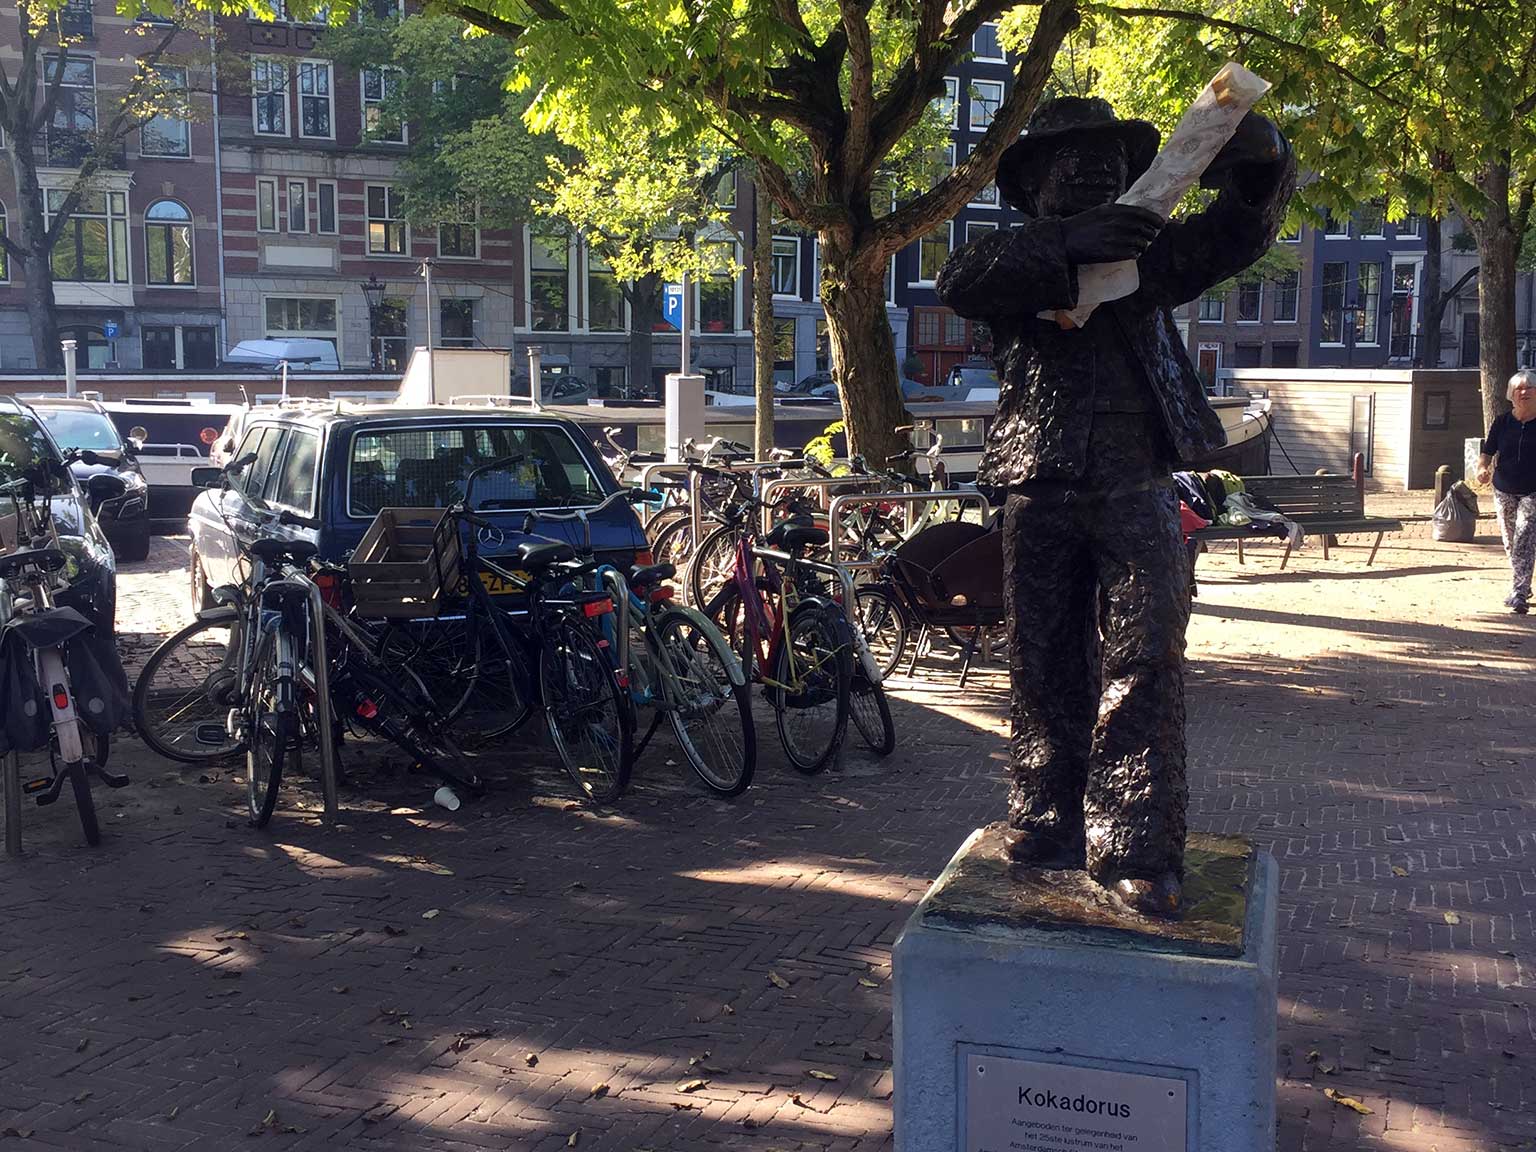 Statue of Kokadorus on the Amsterdam Amstelveld